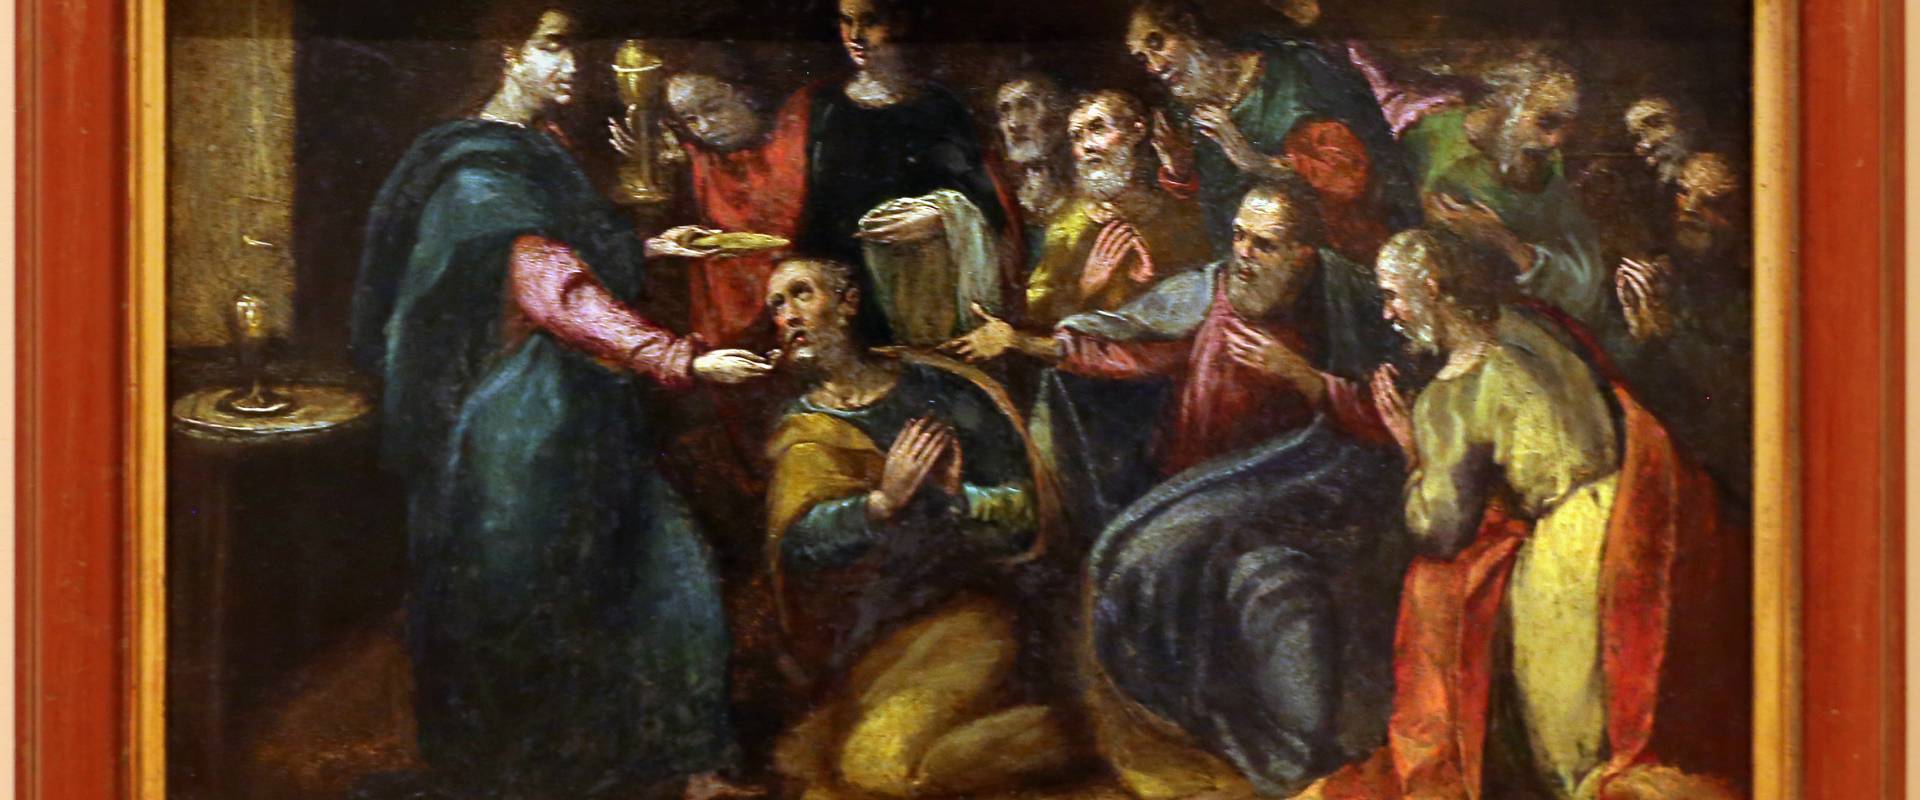 Gian francesco modigliani, storie eucaristiche, 1600-10 ca, dal duomo di forlì, cristo comunica gli apostoli foto di Sailko